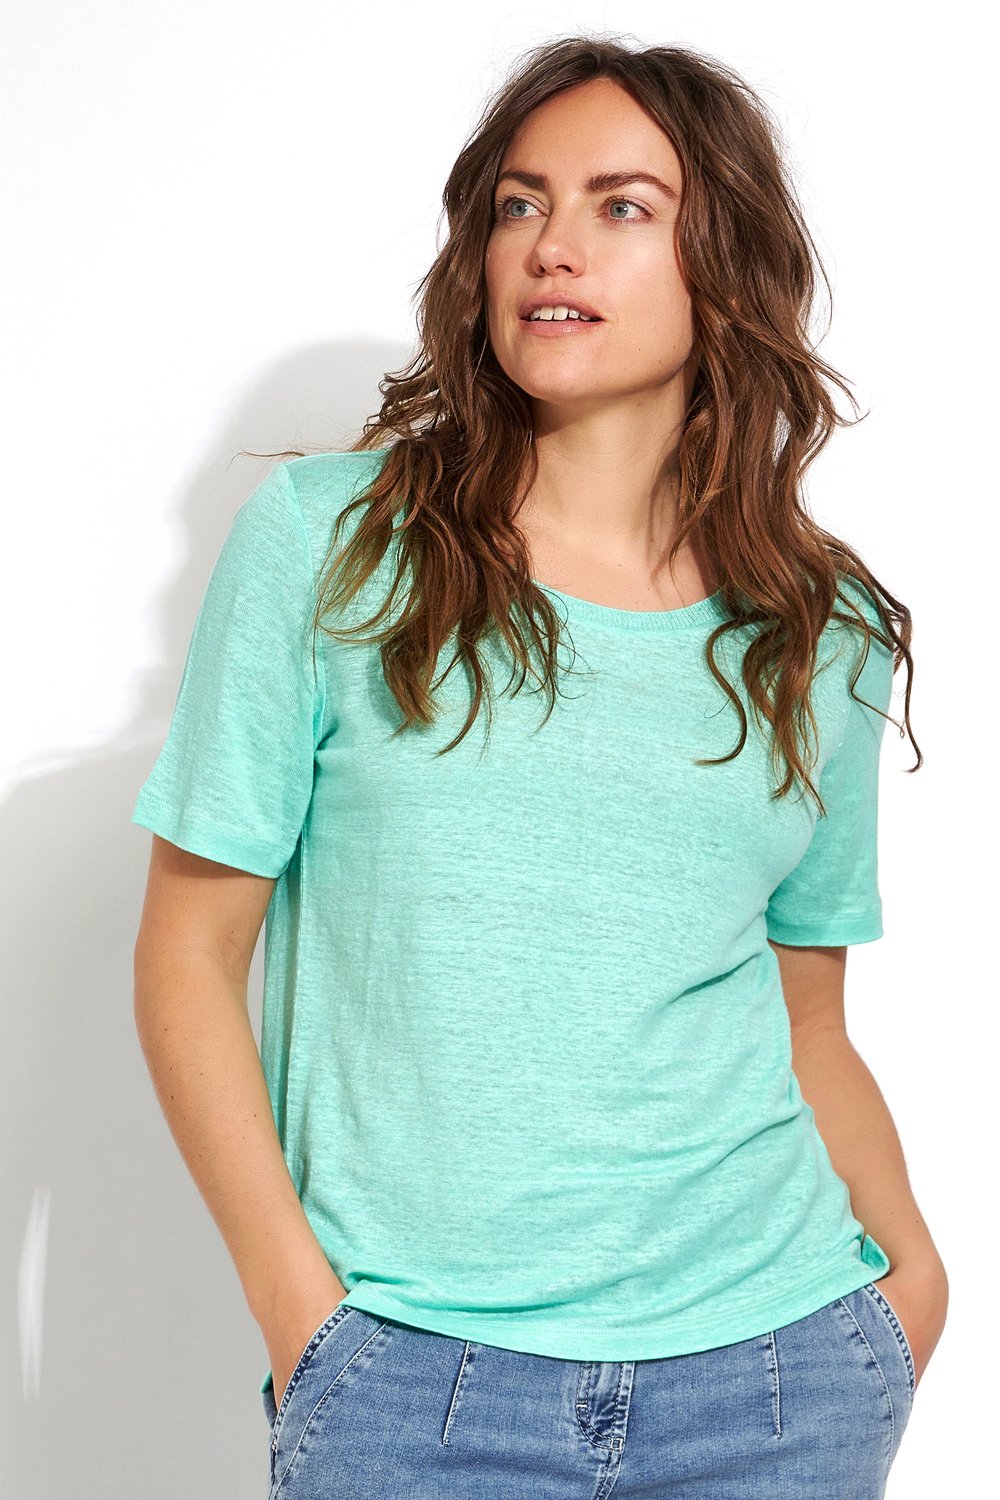 Bequemes Shirt aus Leinen | Style »Esra« green